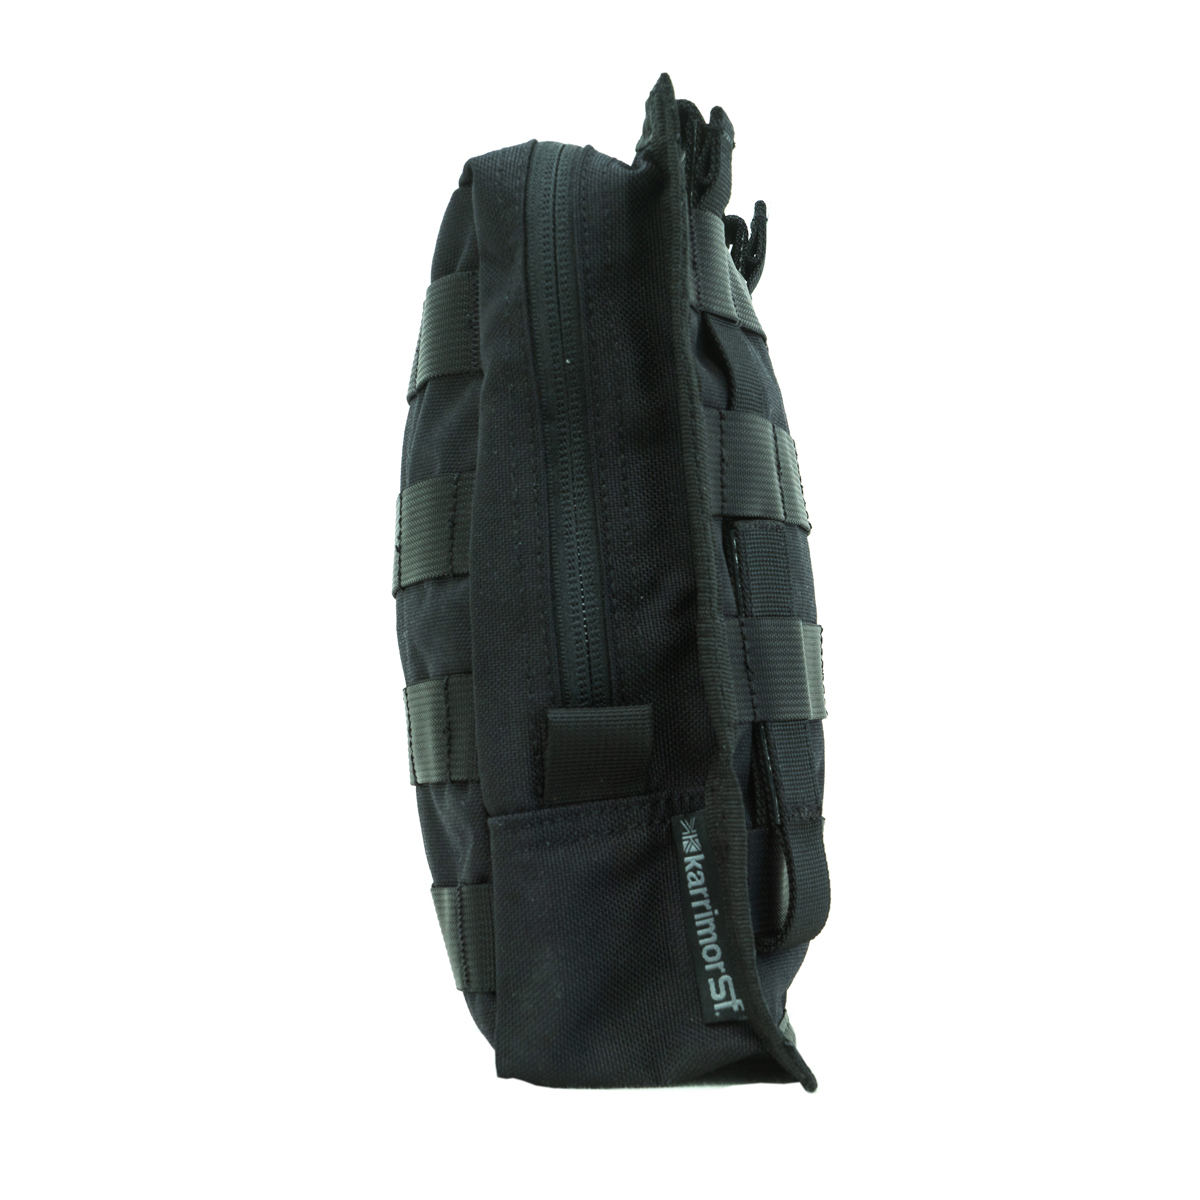 Kupite vojaško torbico Predator Large Utility Pouch QR modular Karrimor SF. Večnamenska torbica za vojaške potrebe, učinkovita in zanesljiva. Opremljen.si.